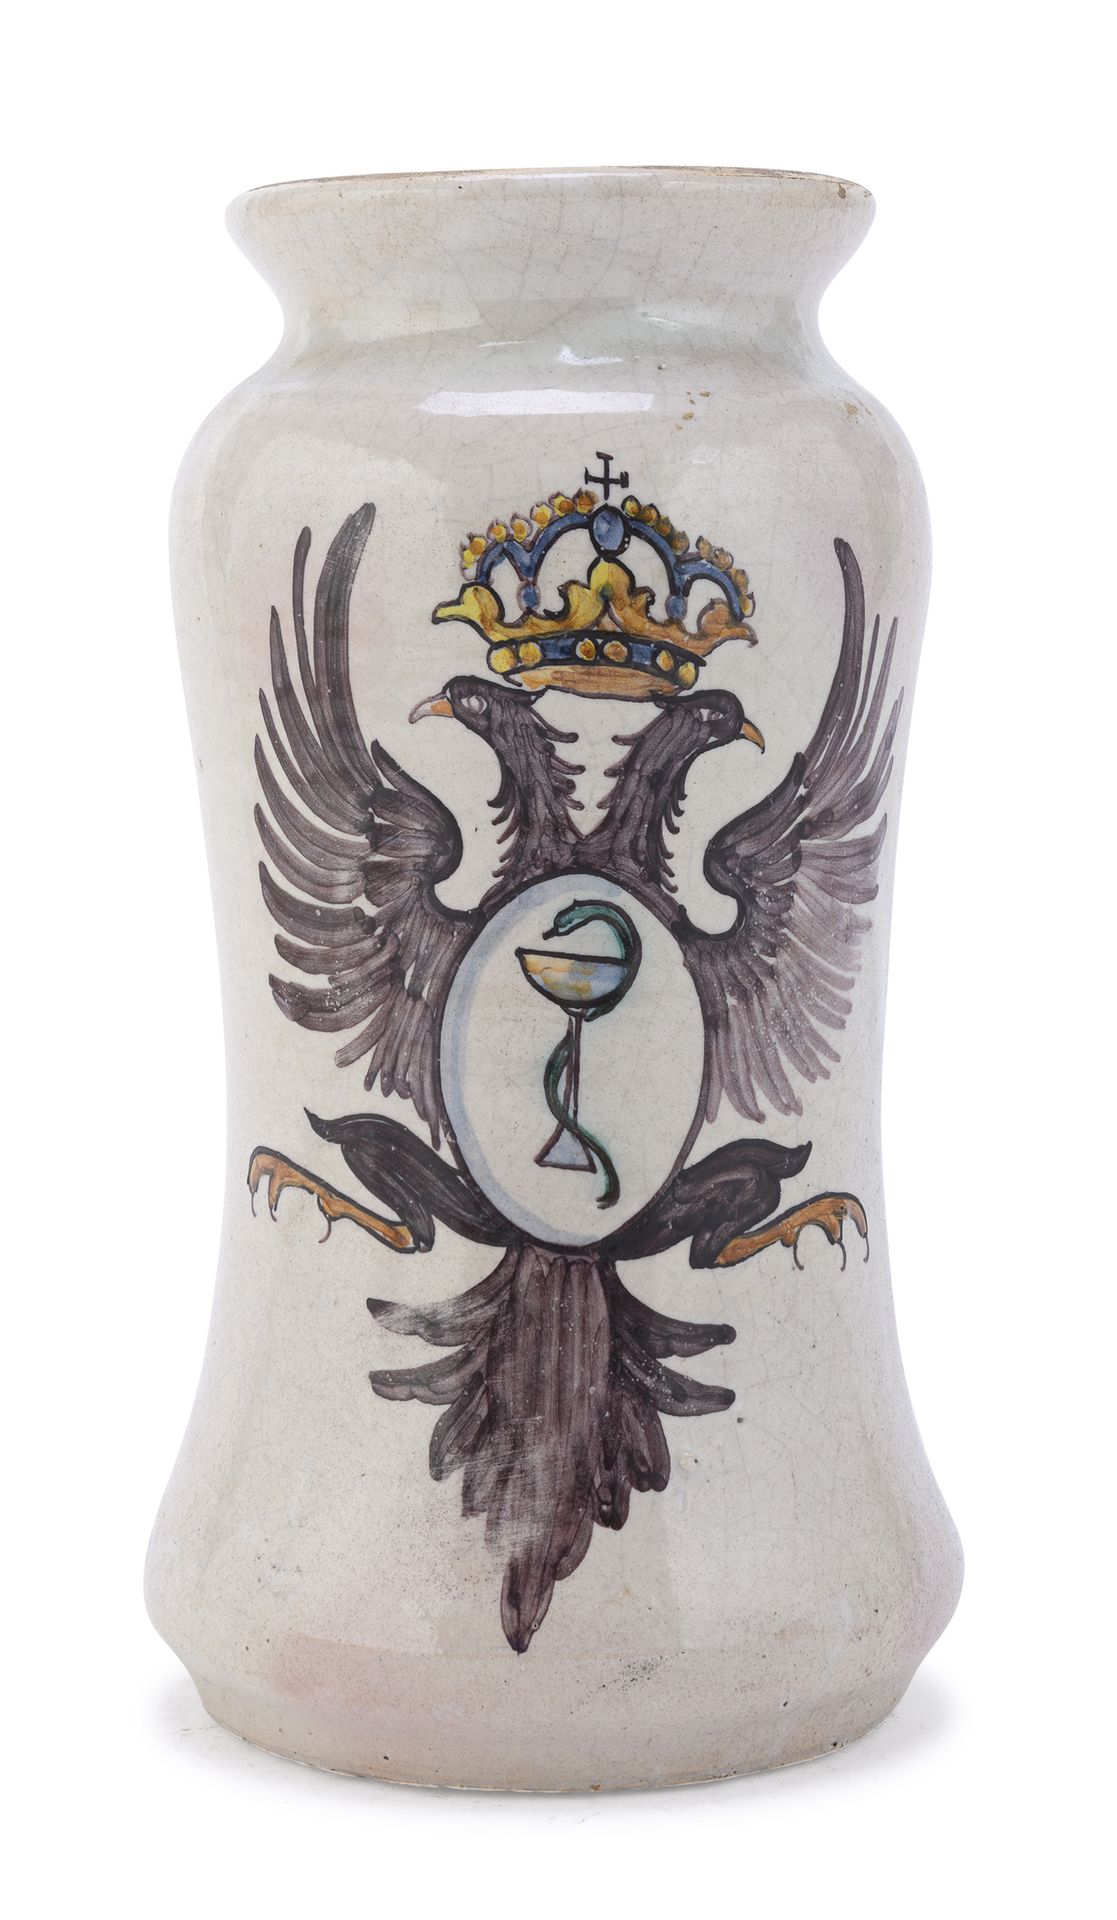 Null 马约里卡-阿尔巴雷洛，意大利中部，18世纪末

米色珐琅，装饰有双冠鹰纹章。

尺寸为26 x 14厘米。

射击缺陷。